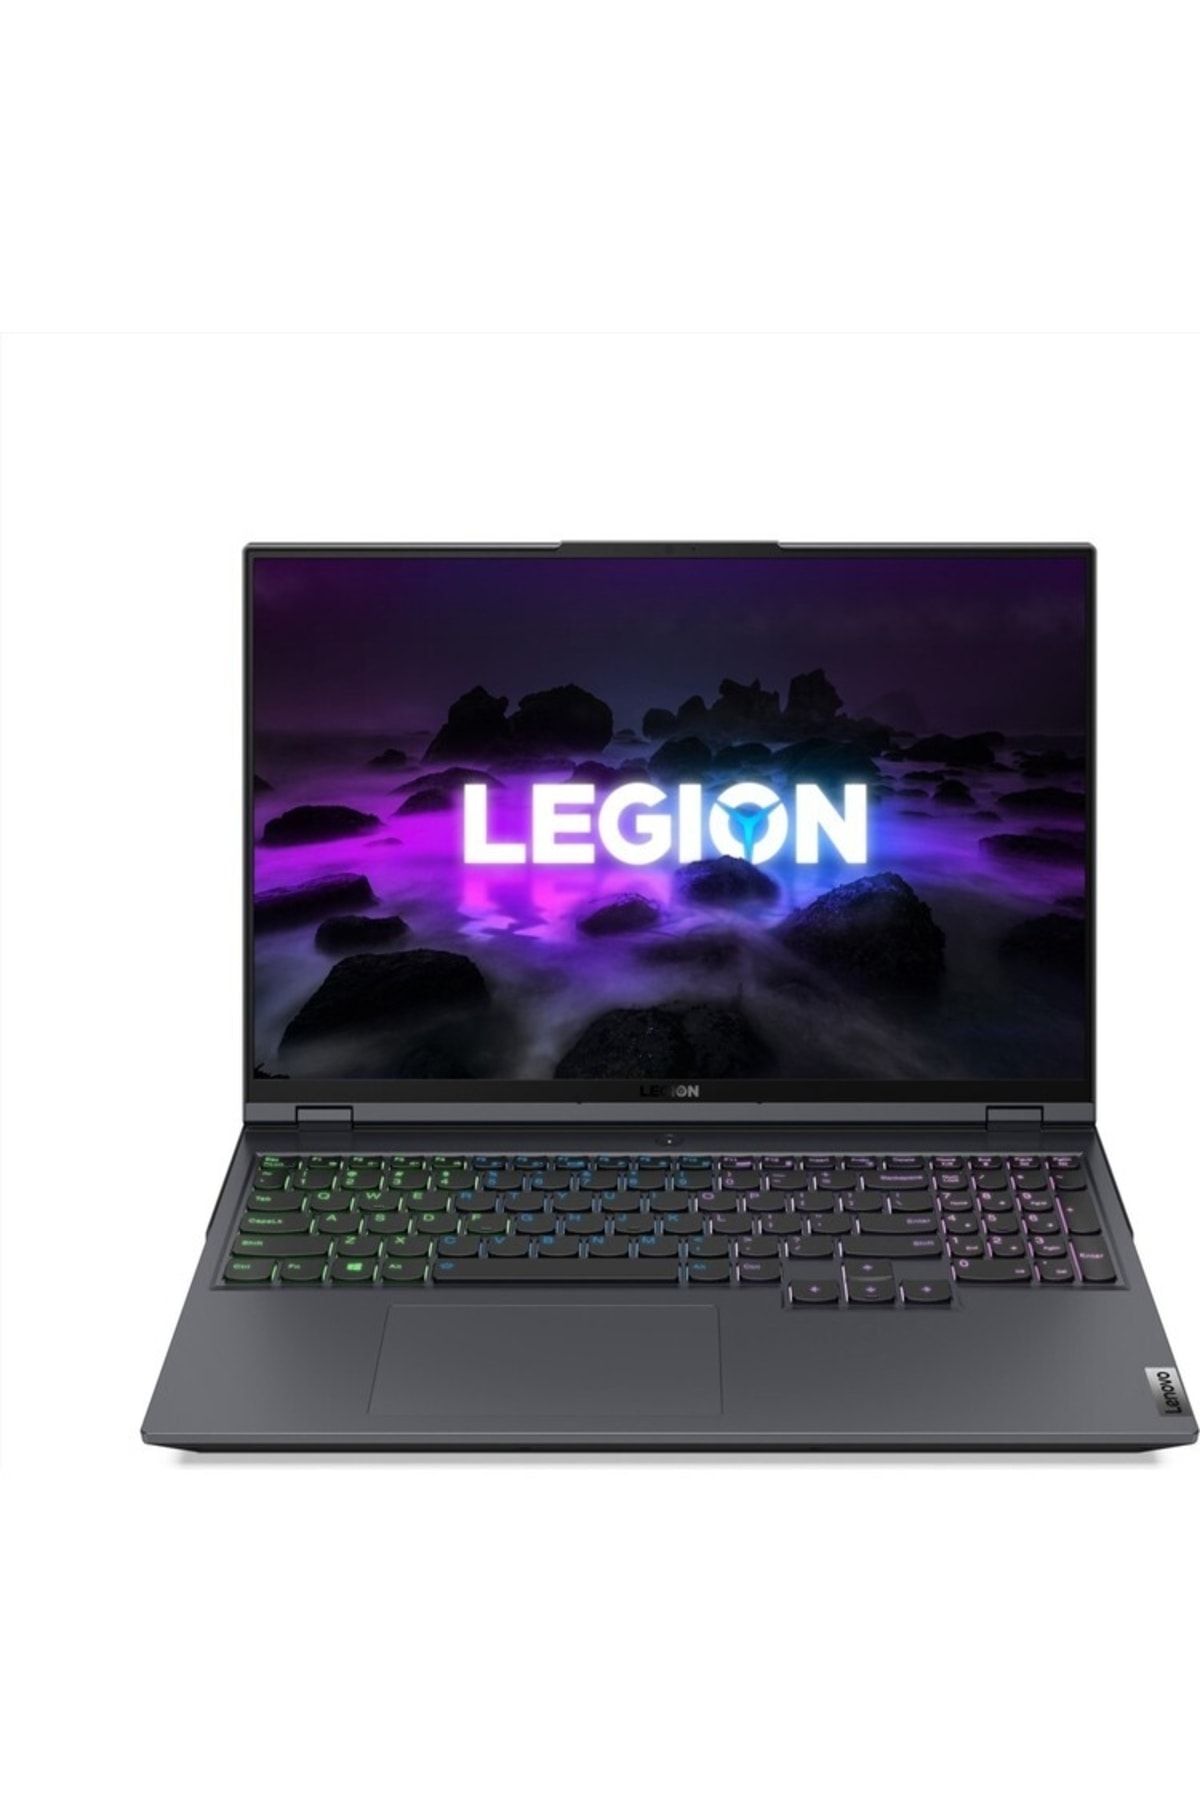 LENOVO Legion 5 Pro Intel Core I7 11800h 32gb 512gb Ssd 6gb Rtx3060 W10p 16" Wqxga 82jd002atx07